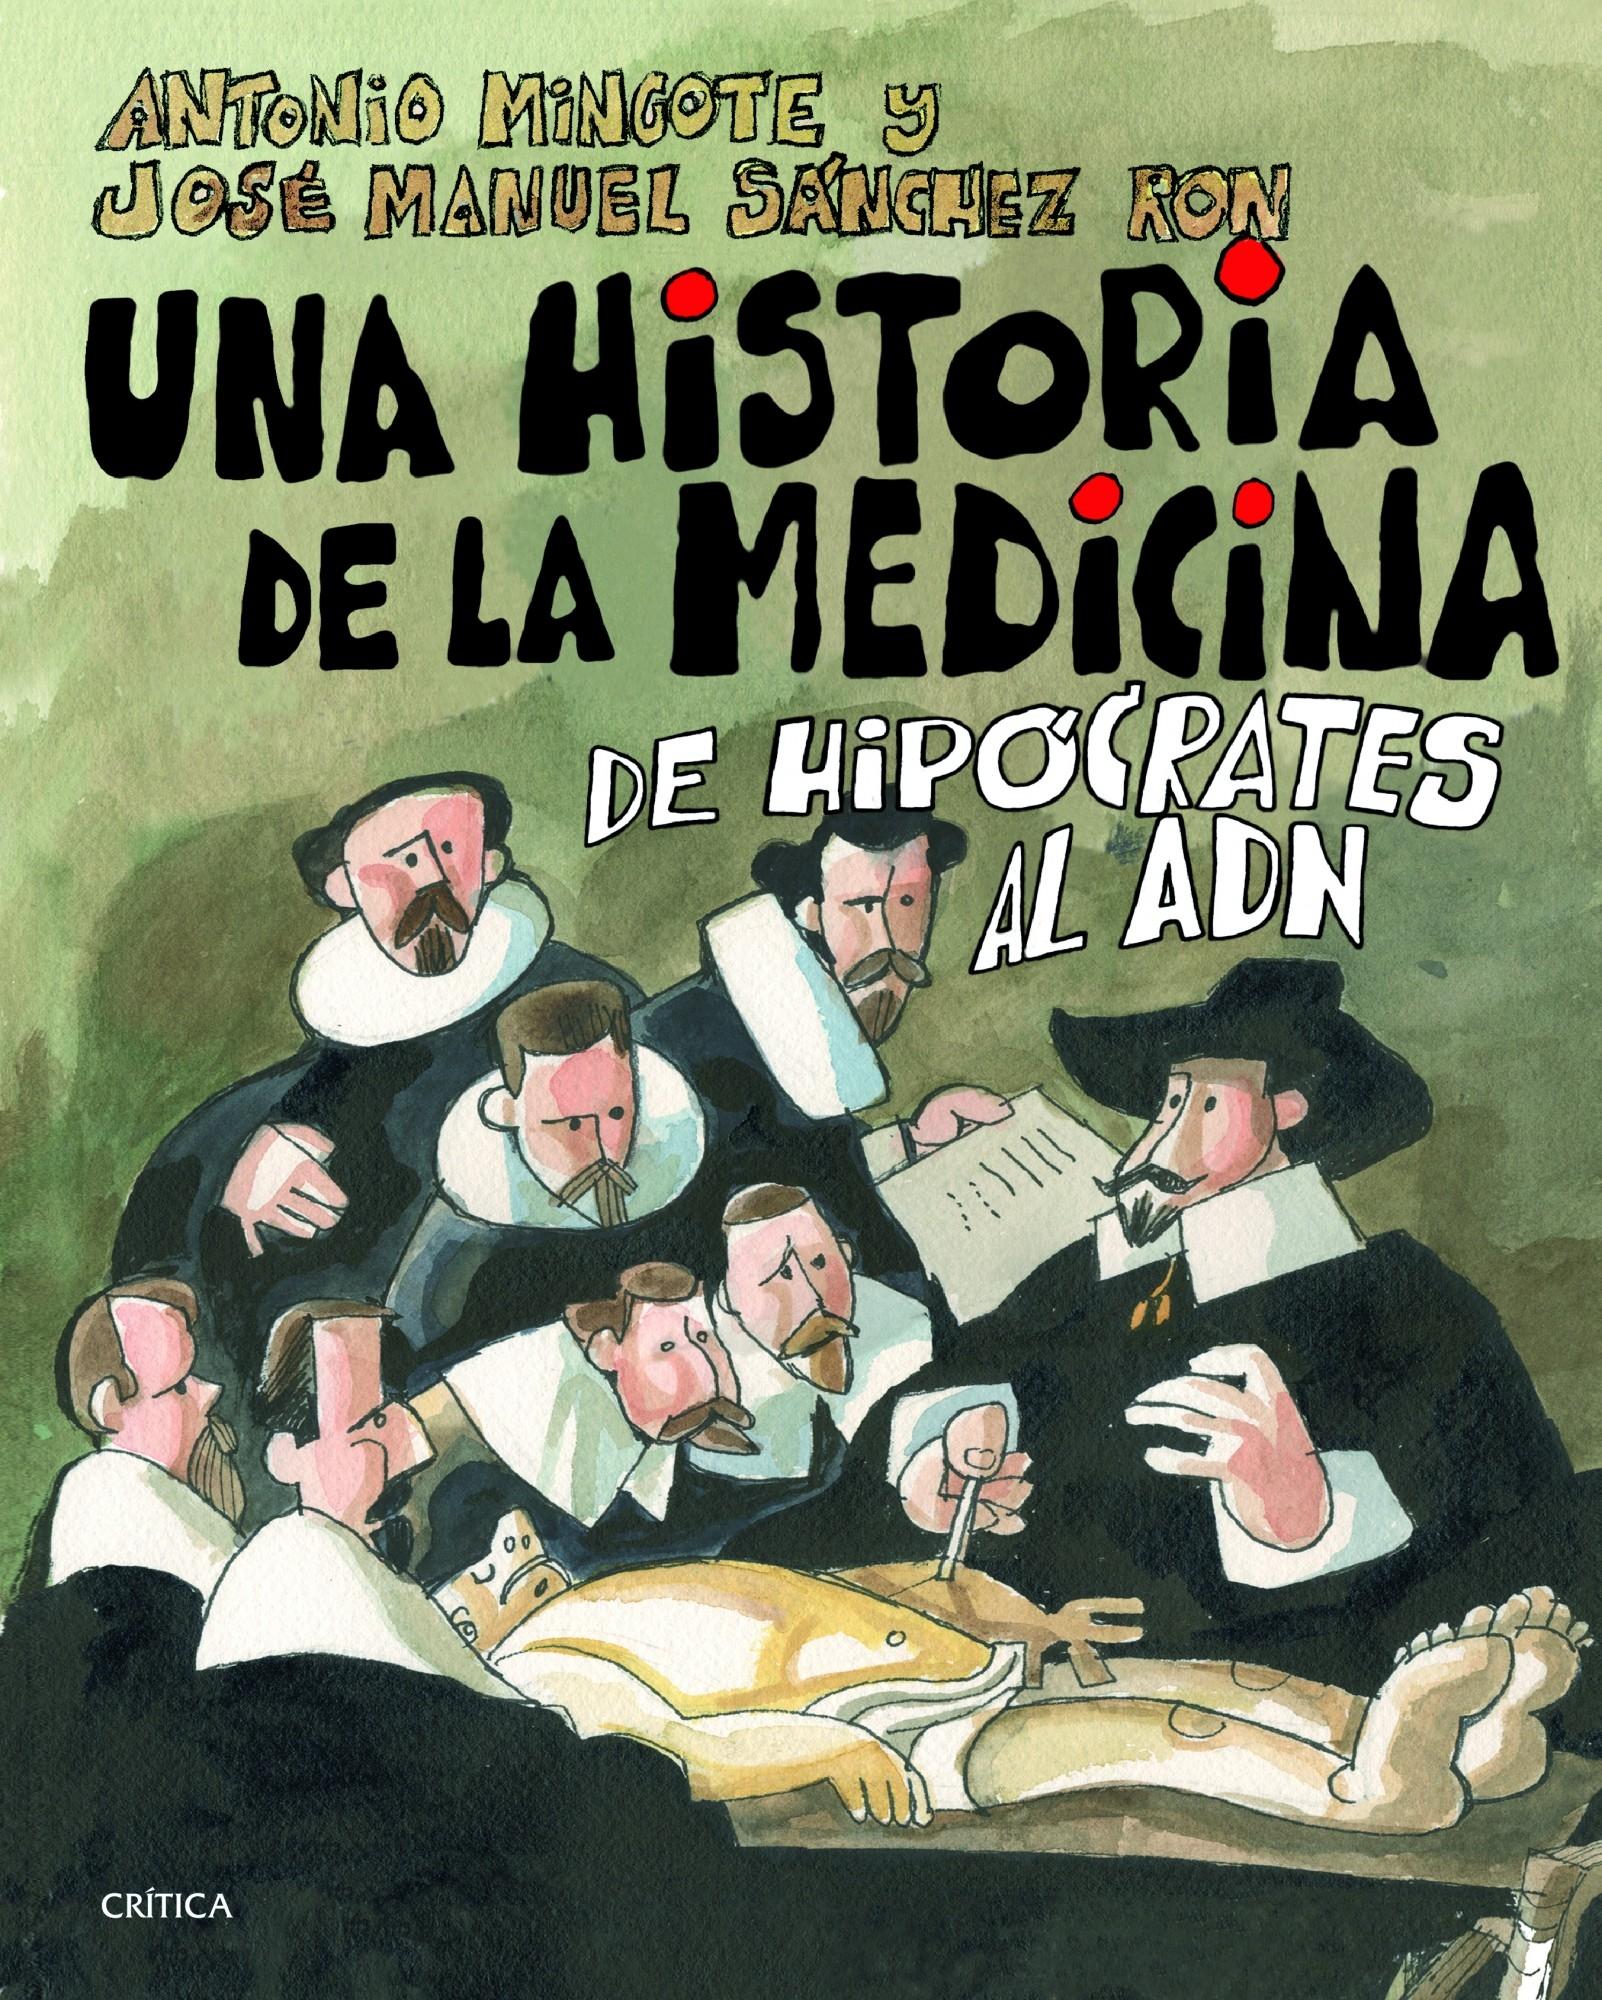 HISTORIA DE LA MEDICINA, UNA. DE HIPOCRATES AL ADN